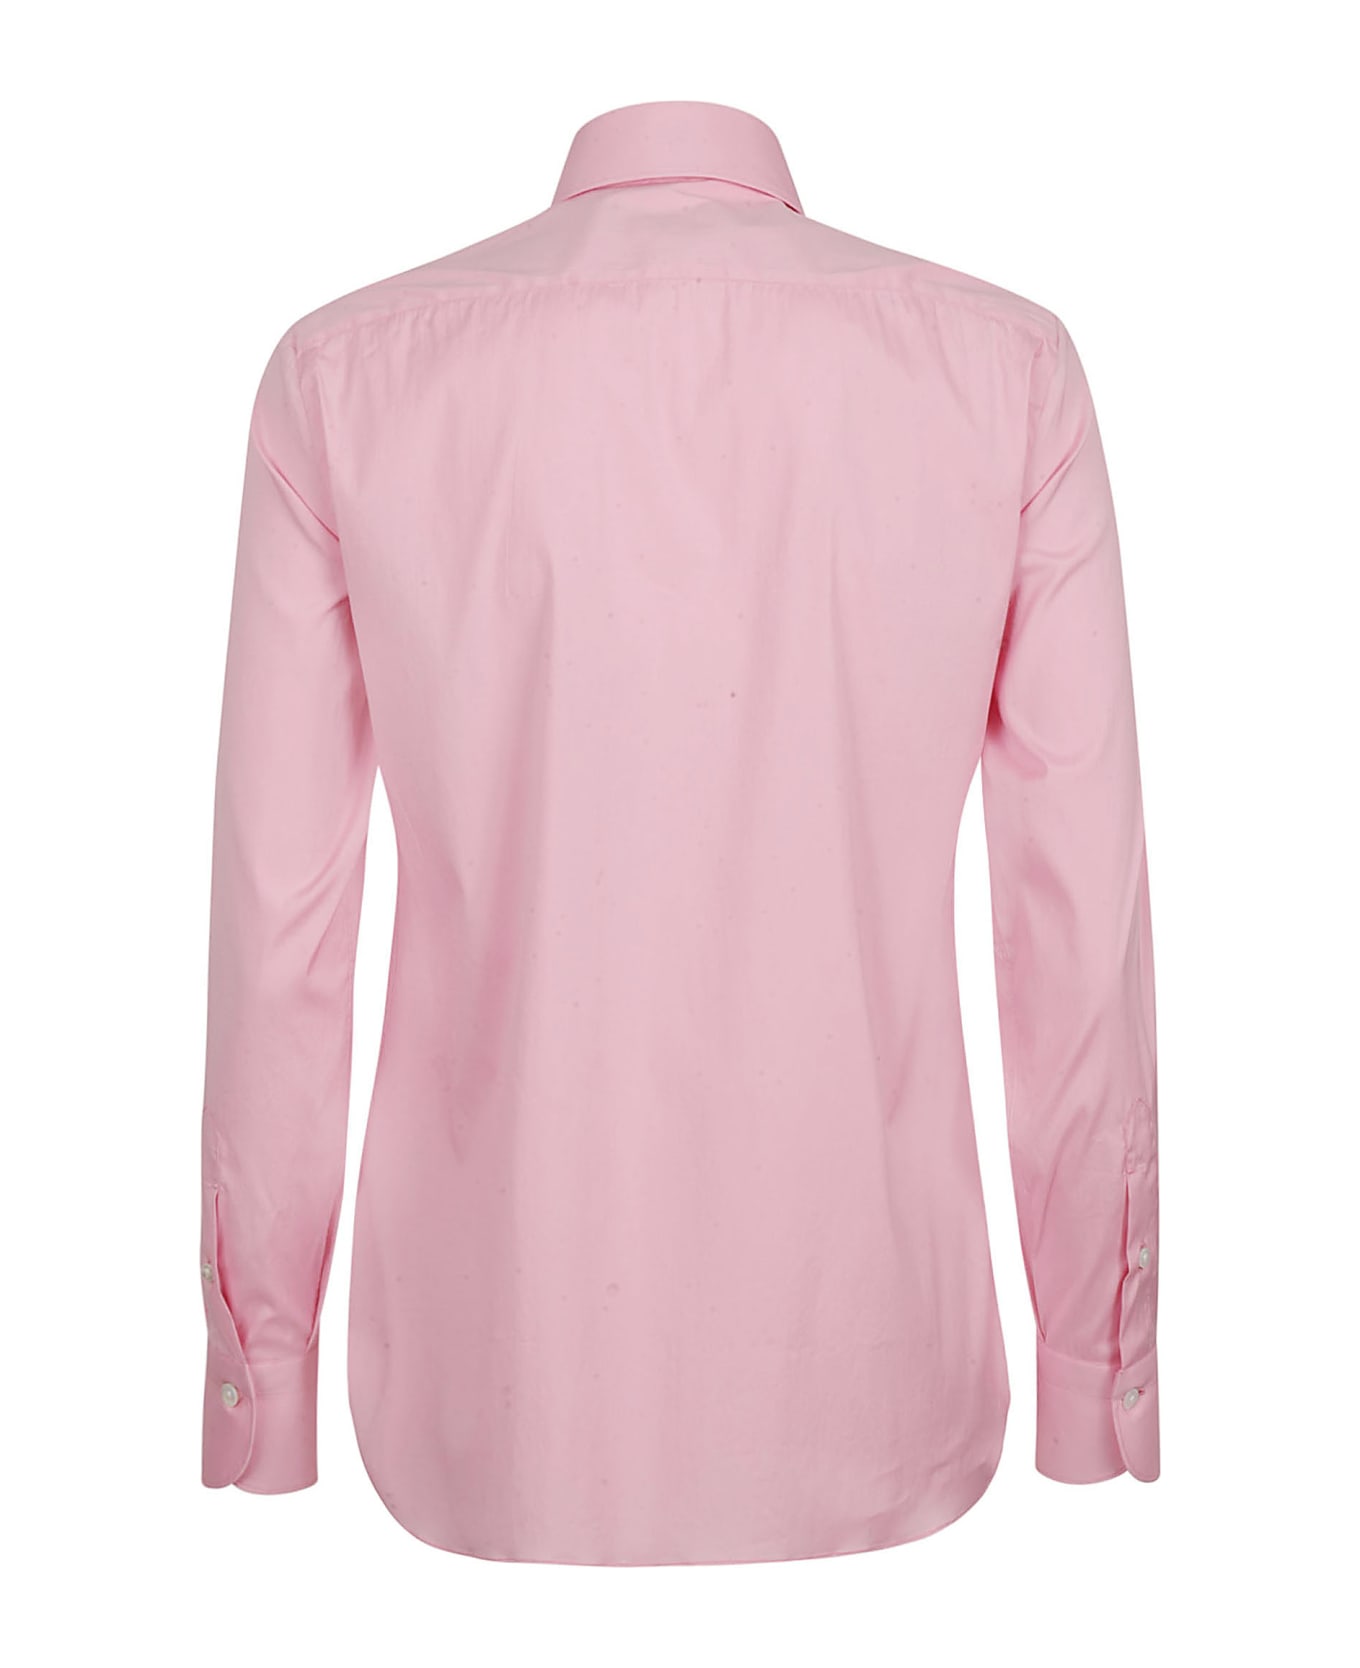 Finamore Shirts Pink - Pink